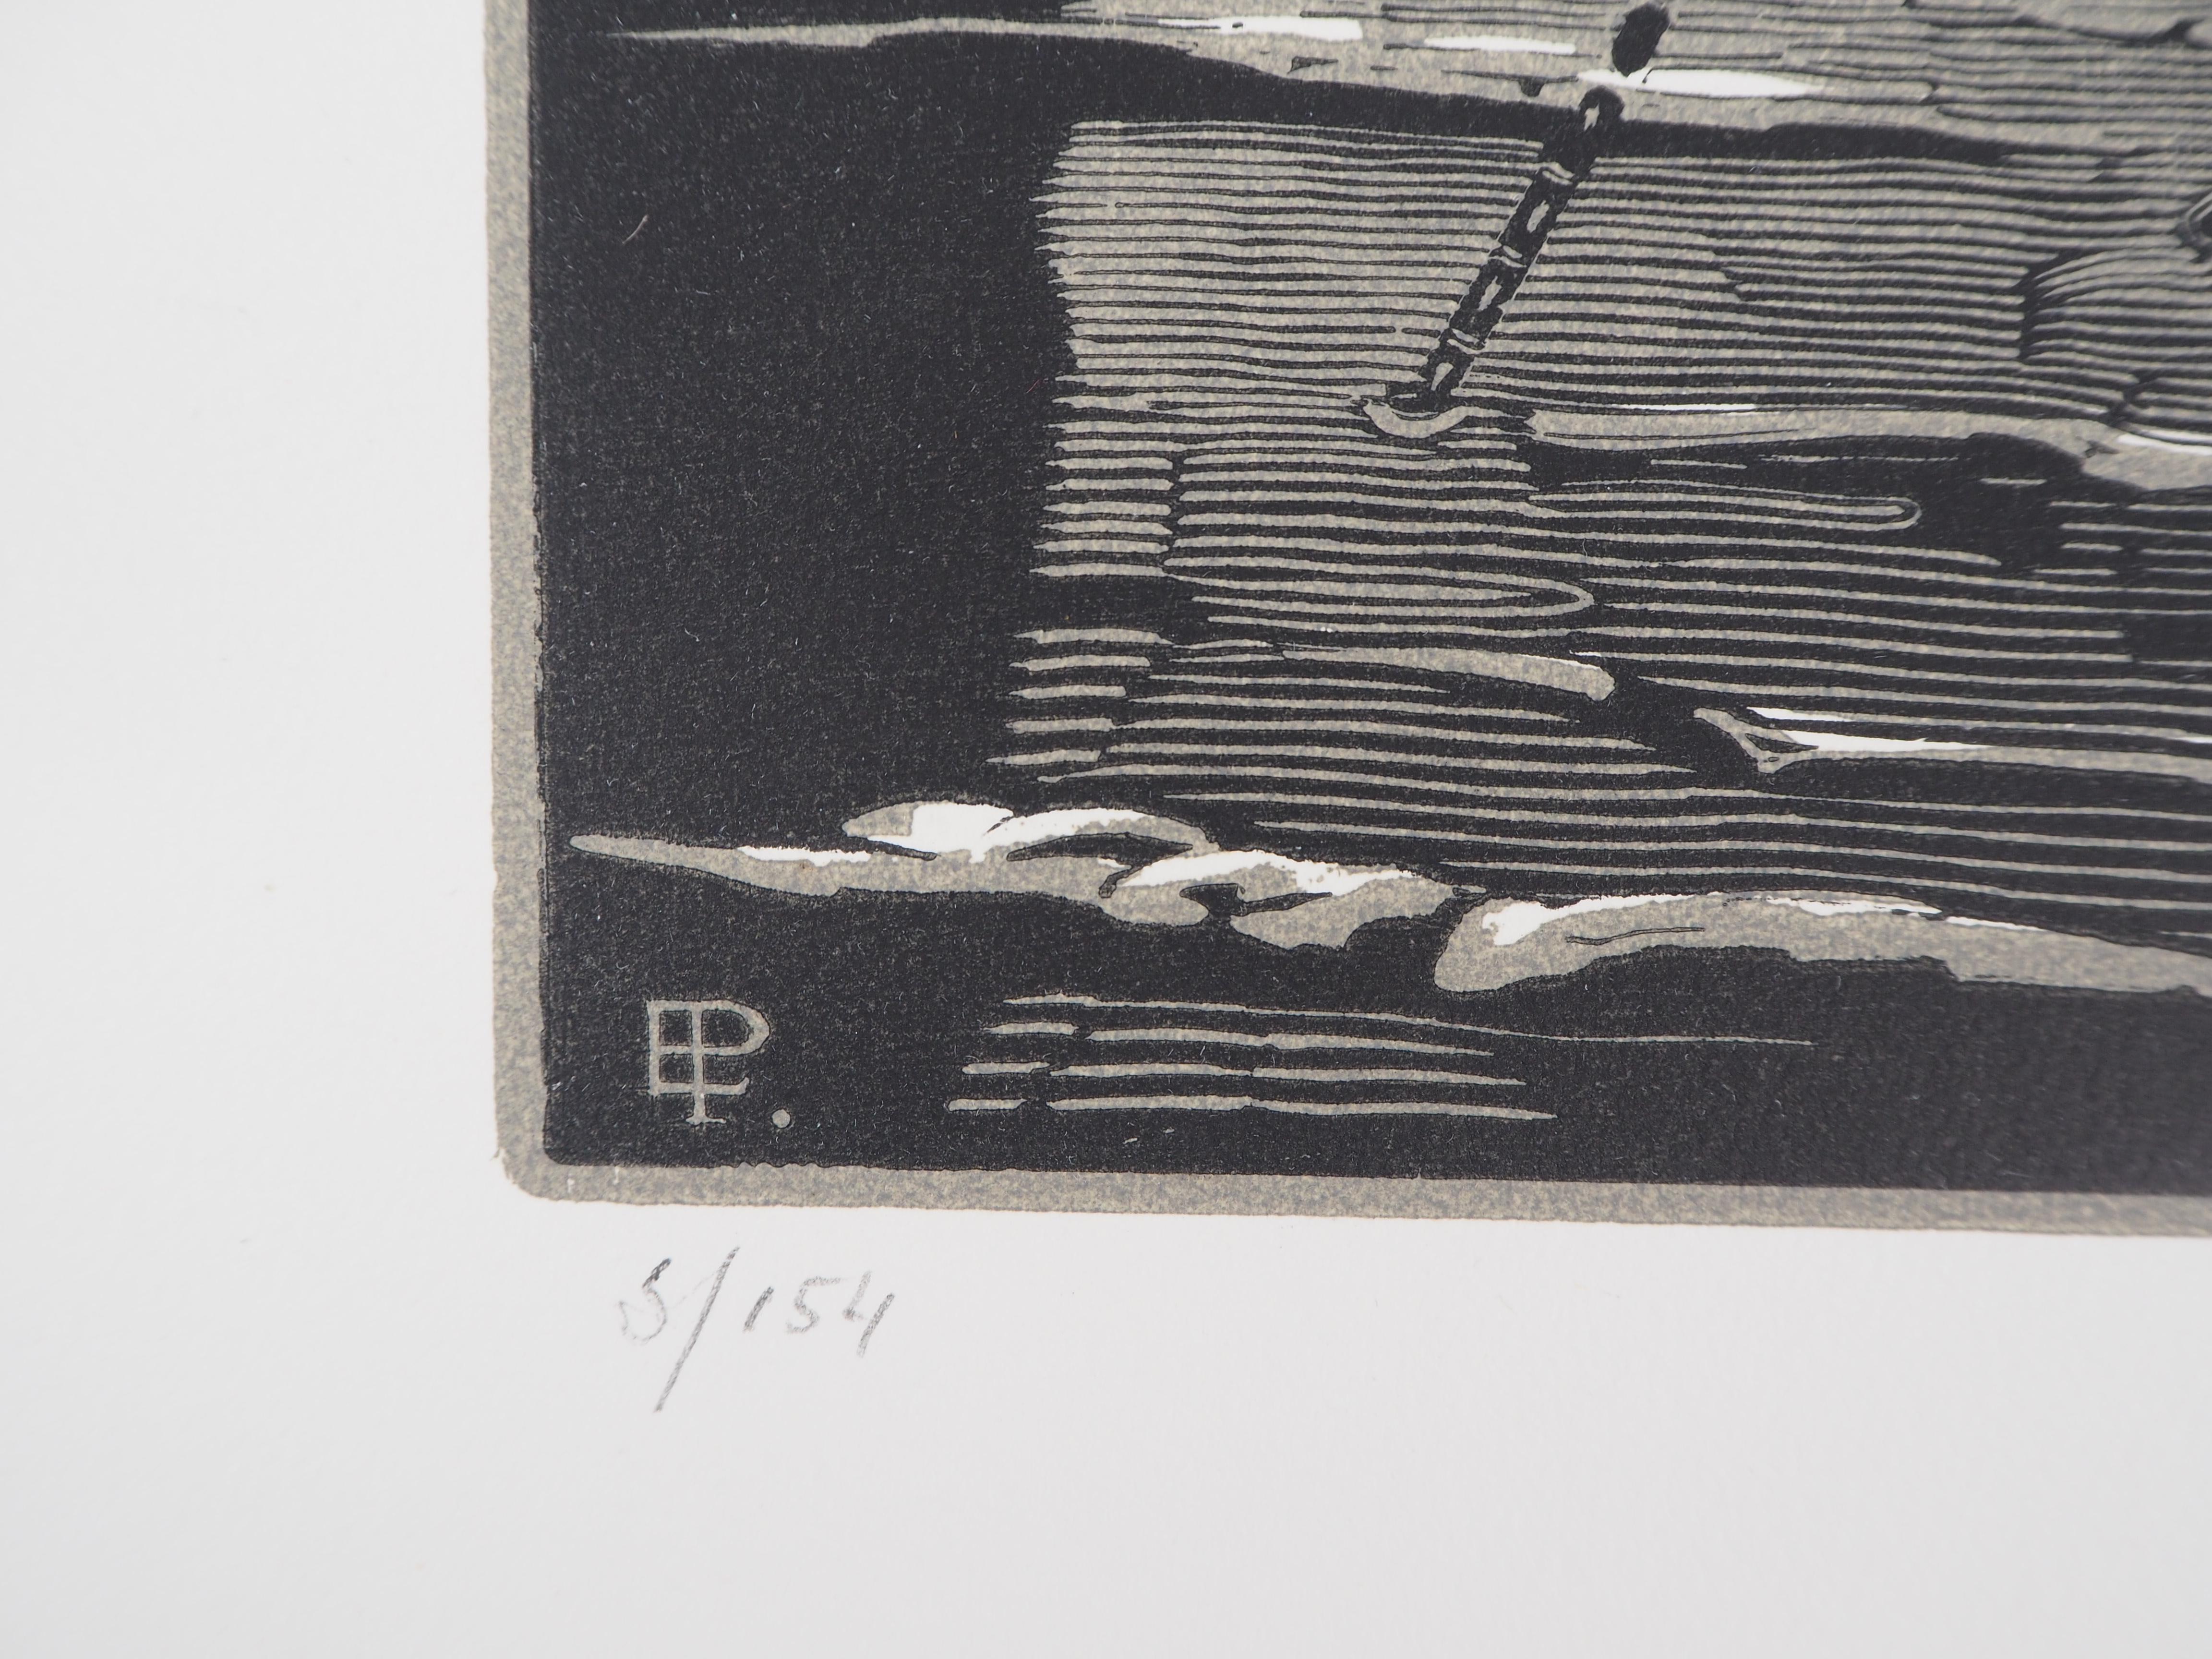 Edward PELLENS
Das Segelboot, 1922

Original Holzschnitt
Handsigniert mit Bleistift
Nummeriert /154
Auf Vellum 32,5 x 25,5 cm (ca. 13 x 10 Zoll)
Trägt den Blindstempel des Herausgebers 'Imagier de la Gravure sur Bois' (Lugt 1140a)

Ausgezeichneter